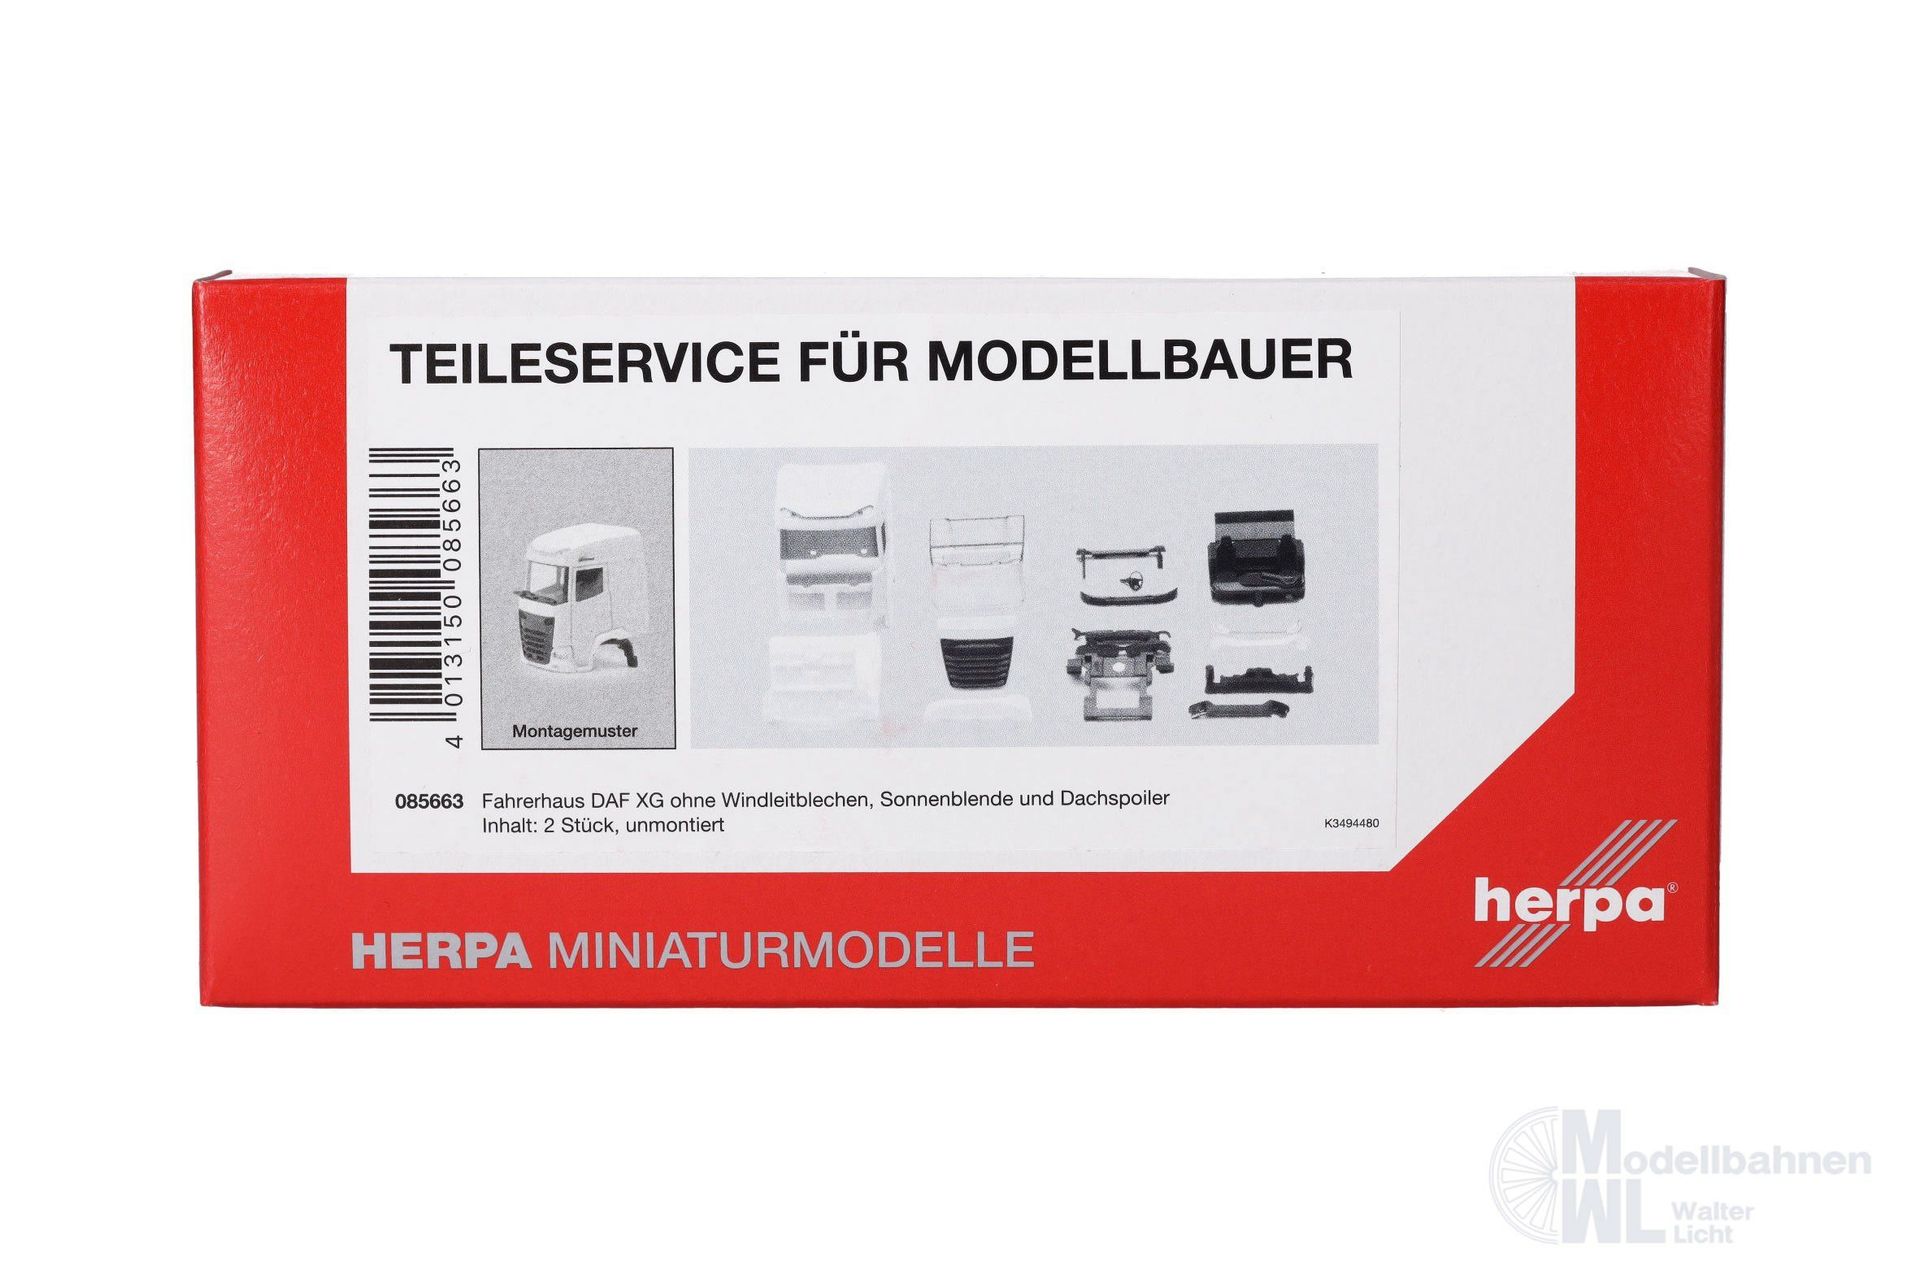 Herpa 085663 - Teileservice Fahrerhaus DAF XG ohne Windleitbleche Dachspoiler H0 1:87